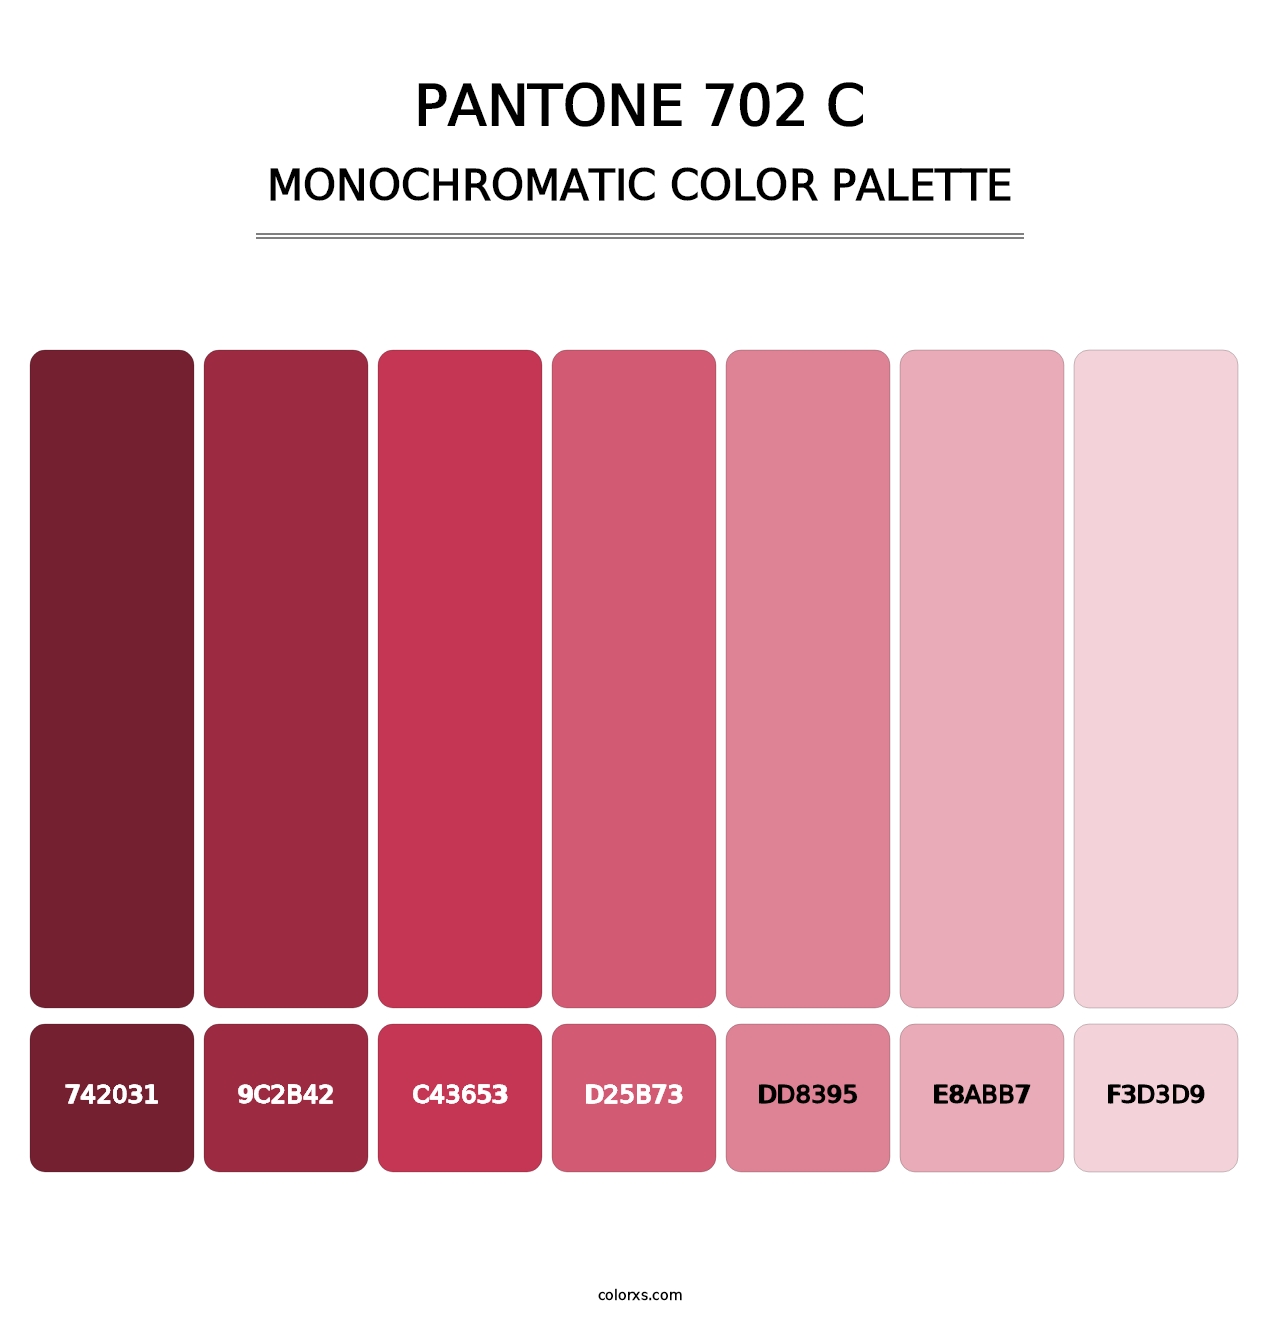 PANTONE 702 C - Monochromatic Color Palette